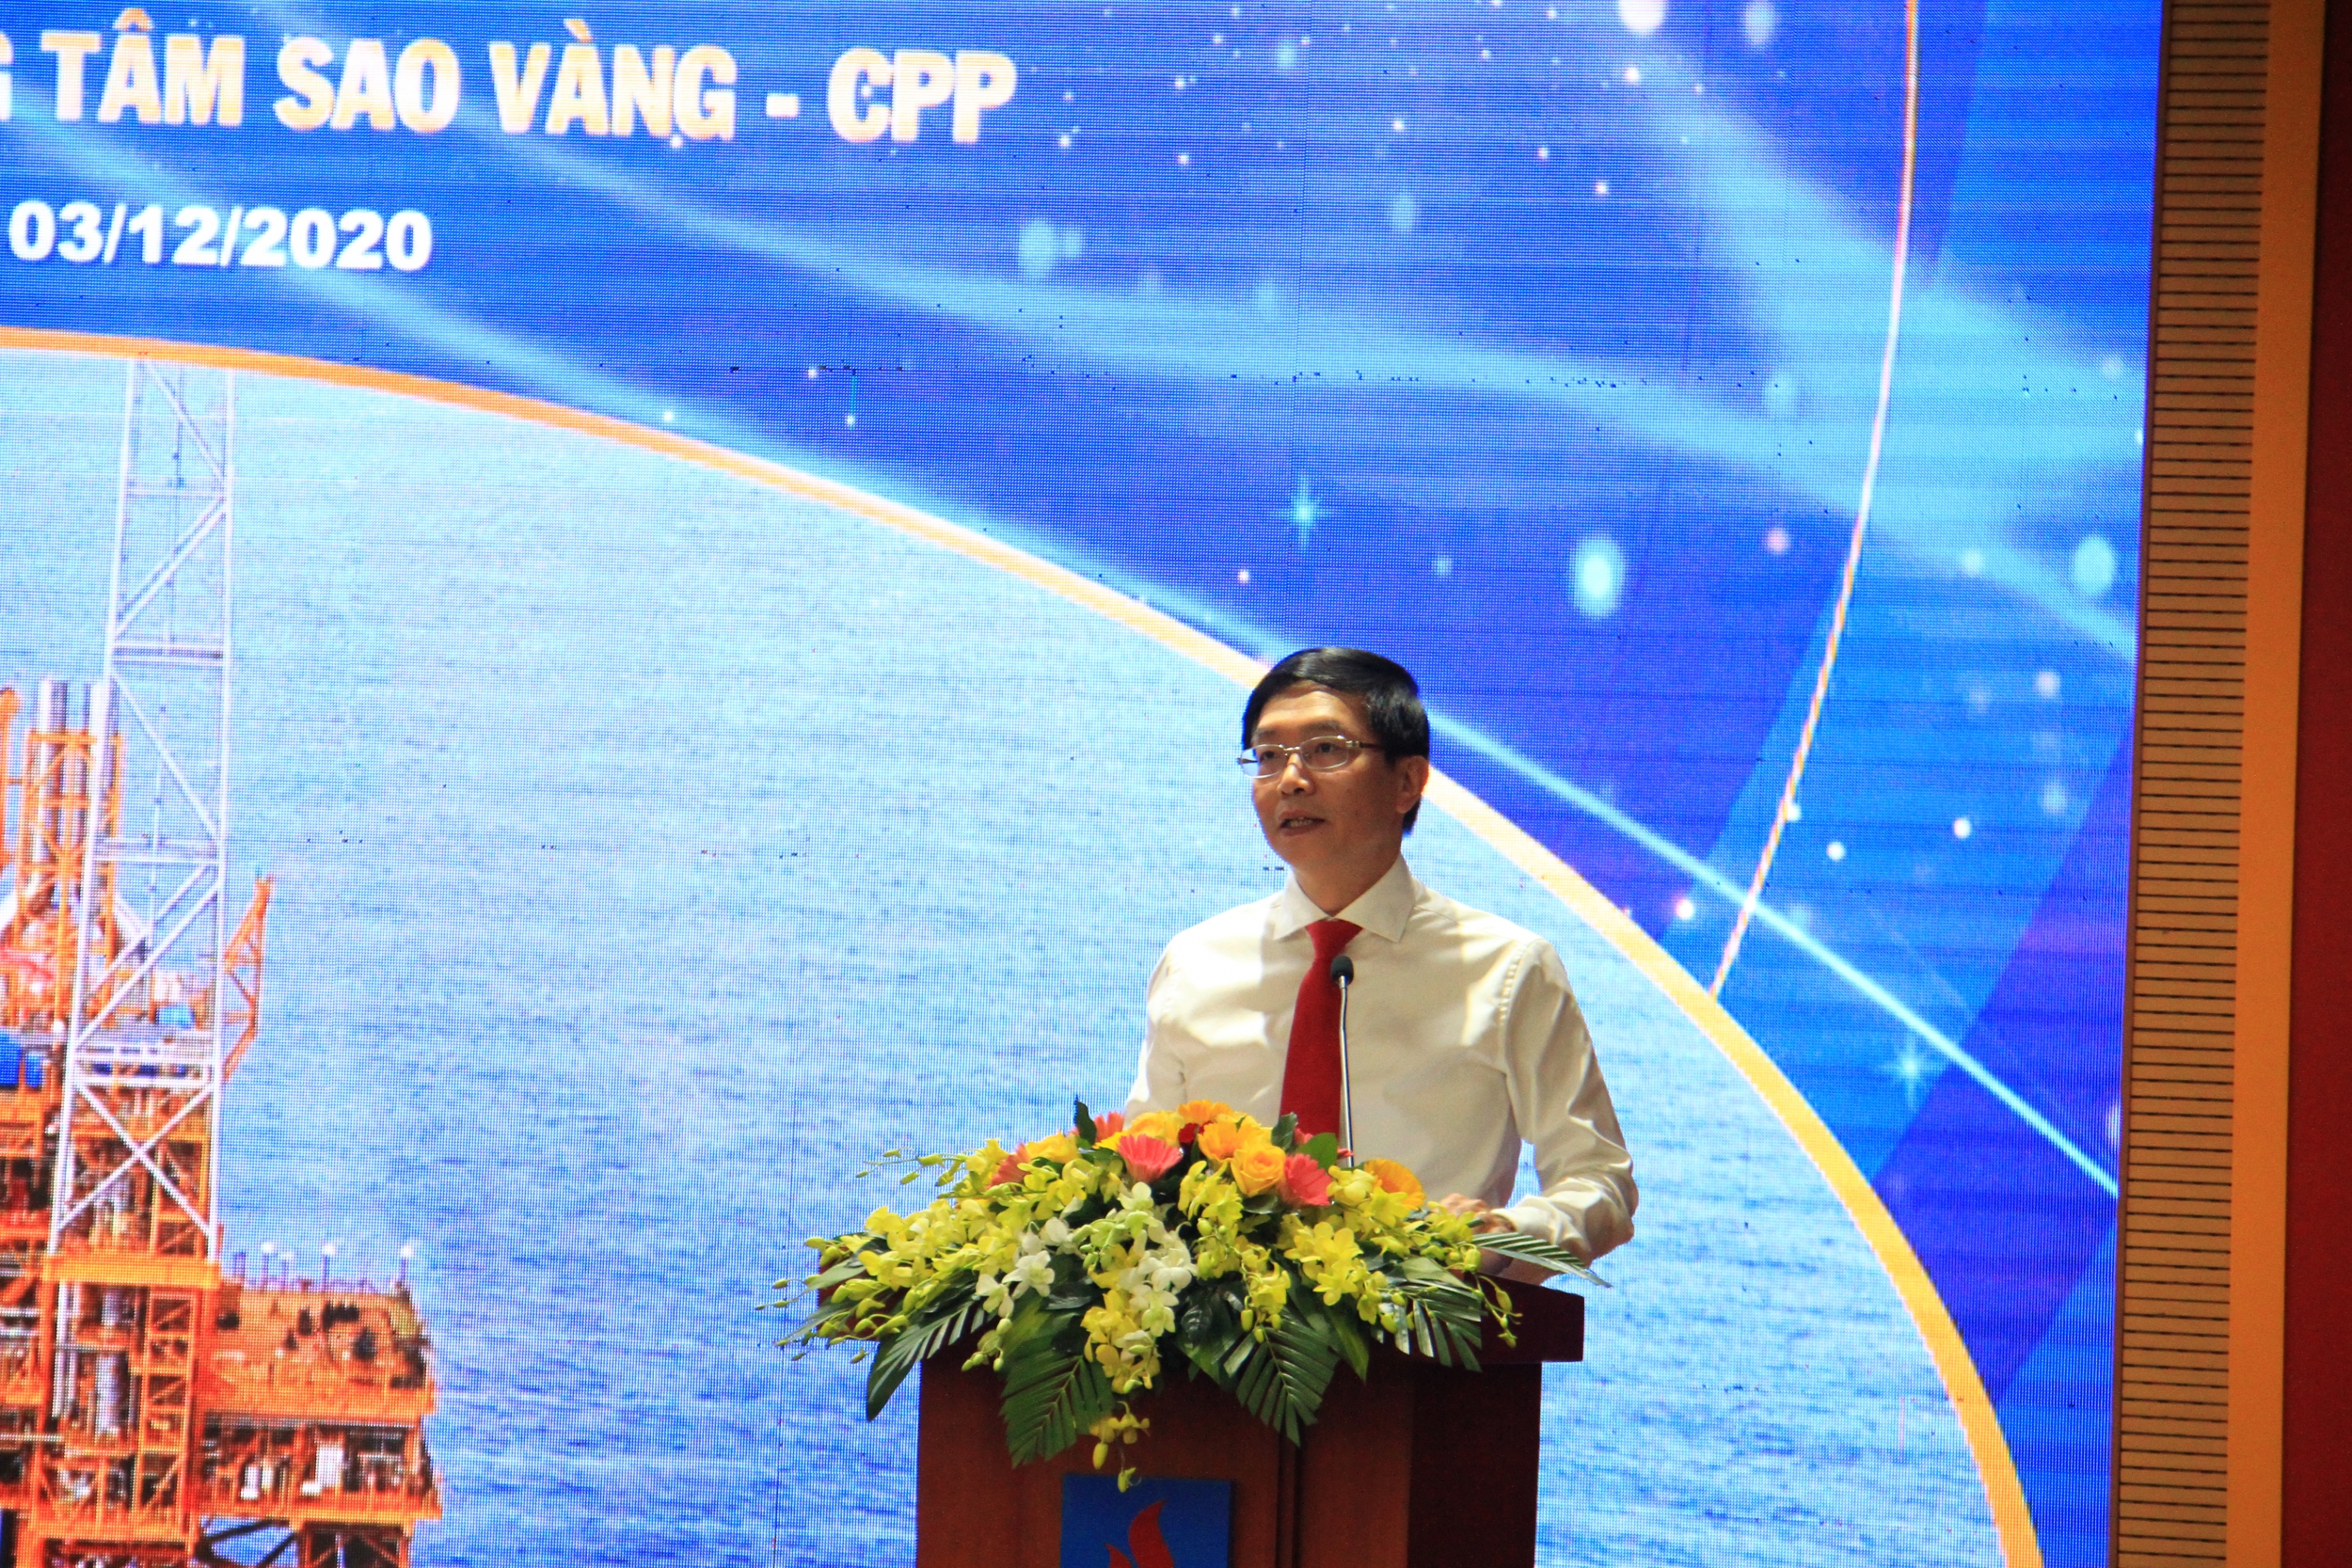 Lễ gắn biển công trình “Giàn xử lý Trung tâm Sao Vàng - CPP” chào mừng Đại hội đại biểu toàn quốc lần thứ XIII của Đảng